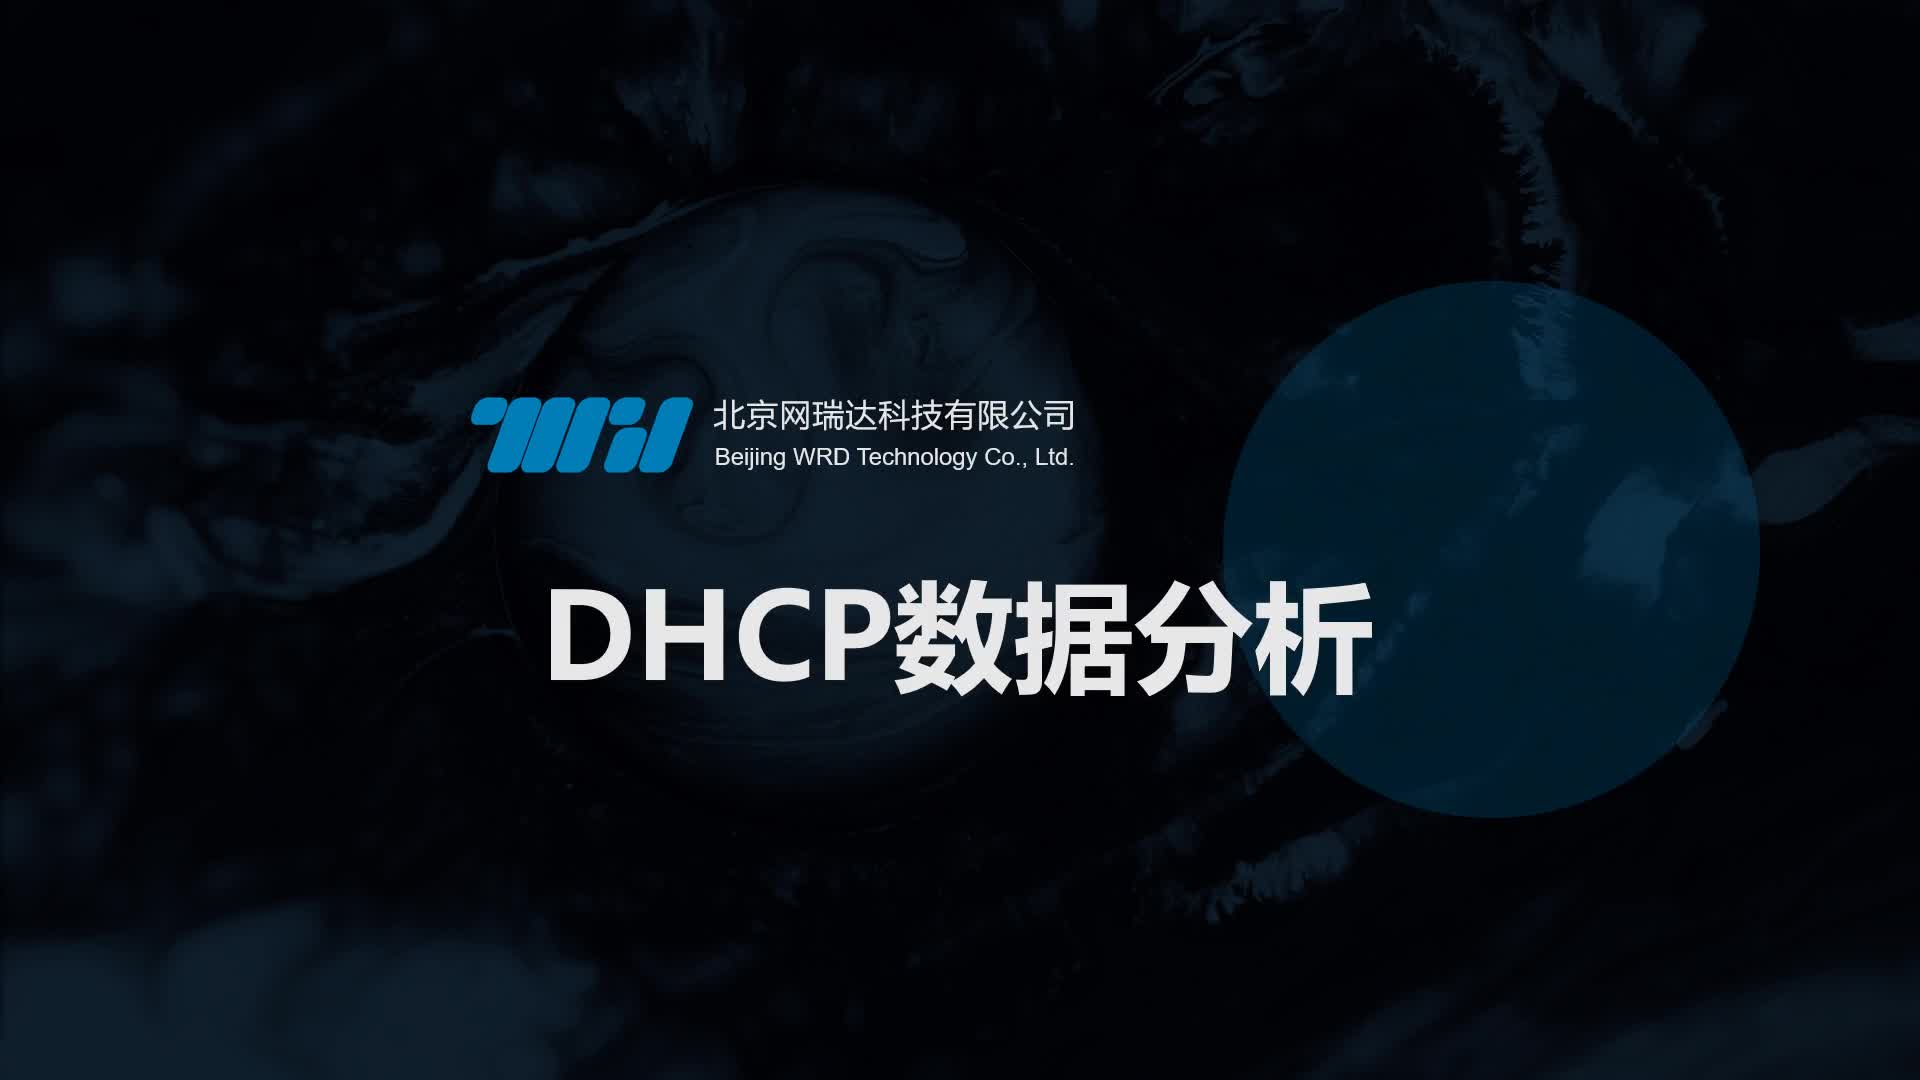 165-DHCP-DHCP数据分析